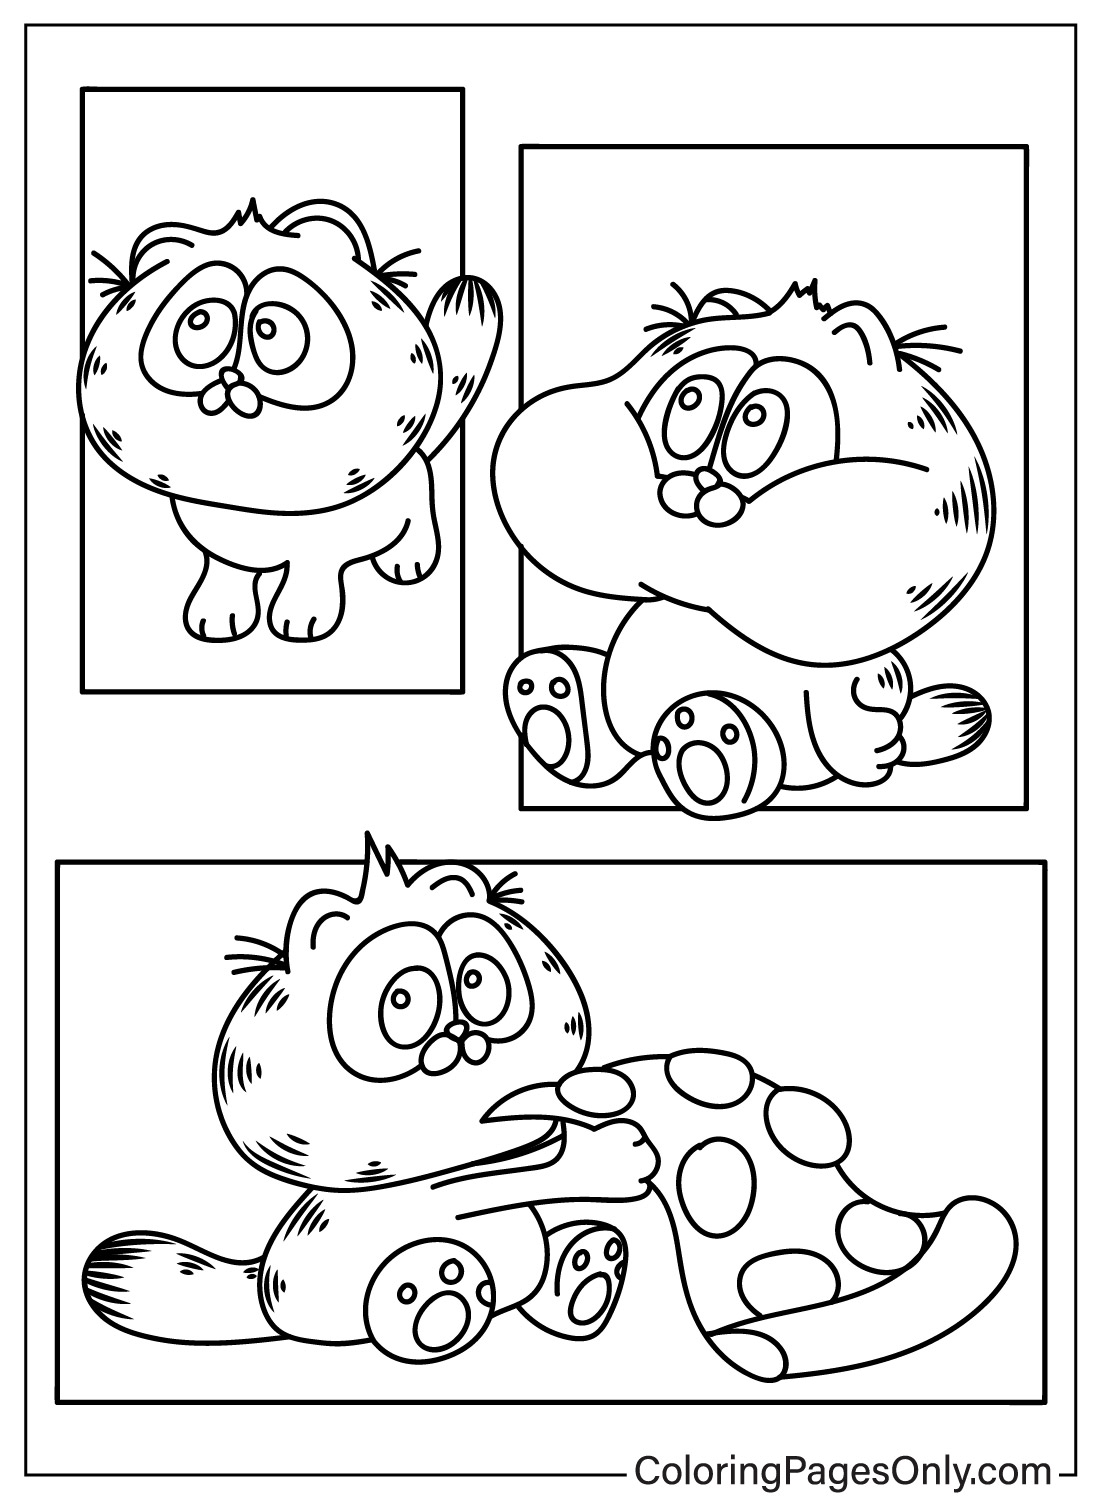 Coloriage mignon de Garfield de Garfield